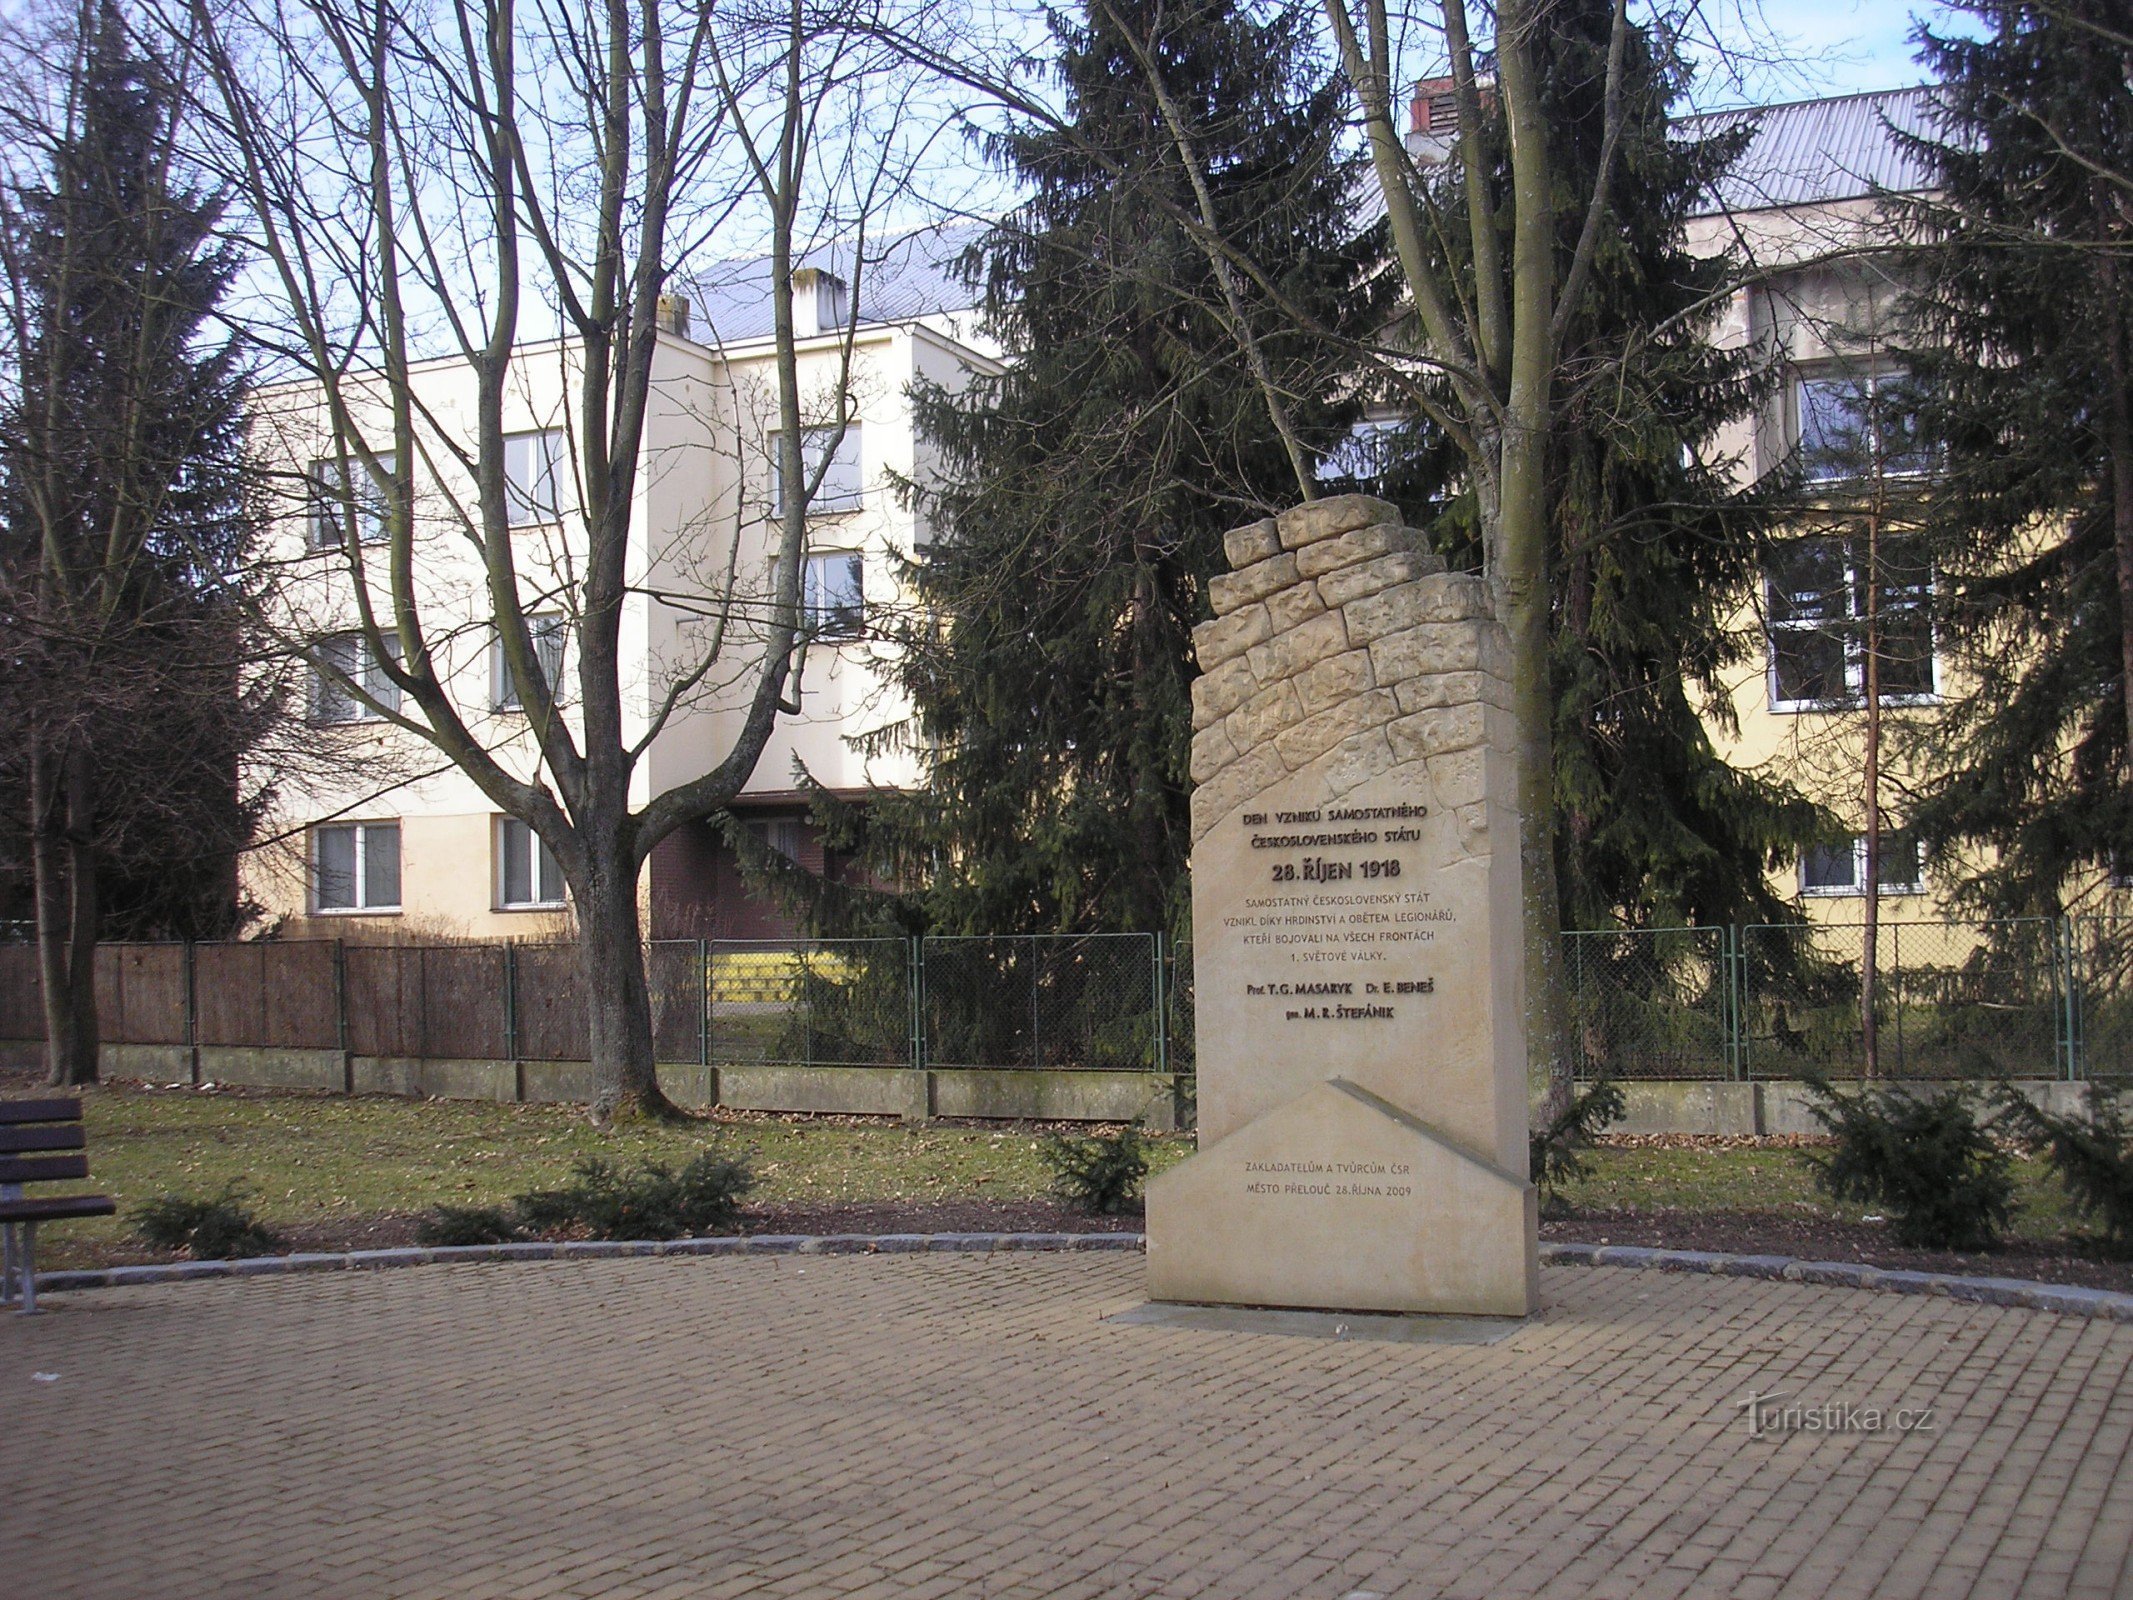 Avtorica približno trimetrskega spomenika iz peščenjaka je Dagmar Štěpánková iz Stře